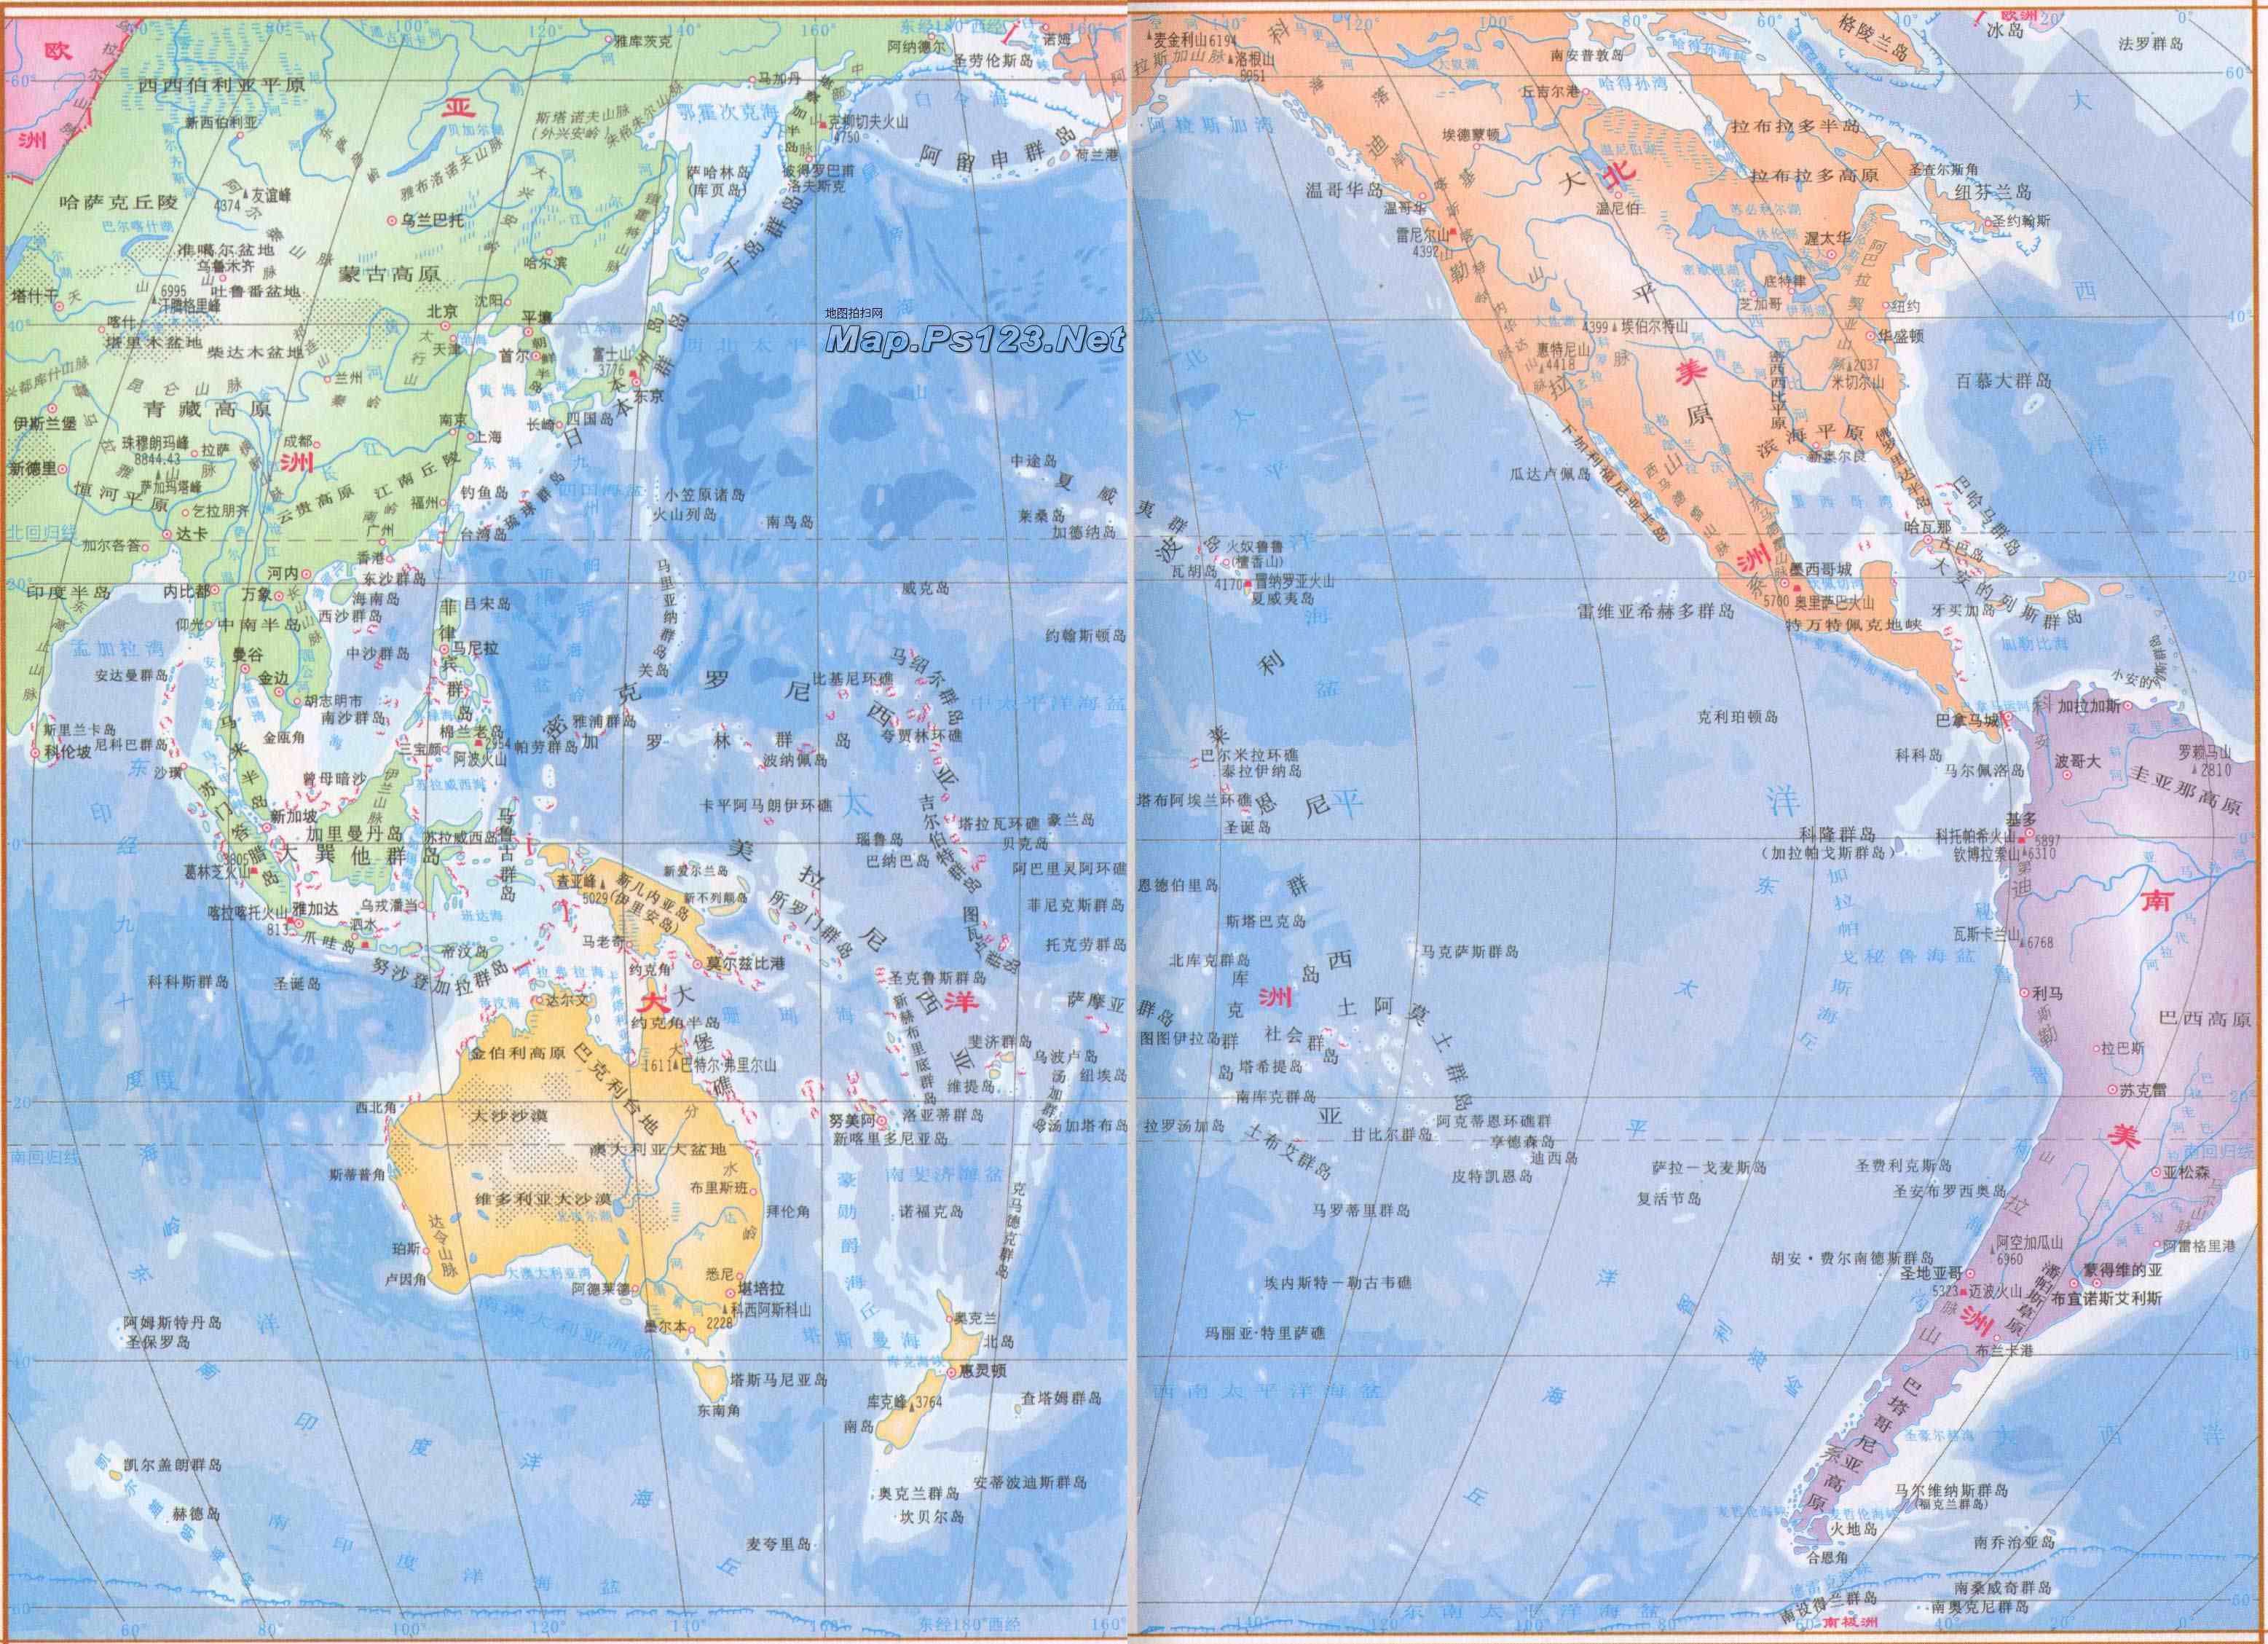 世界海域划分图高清图片